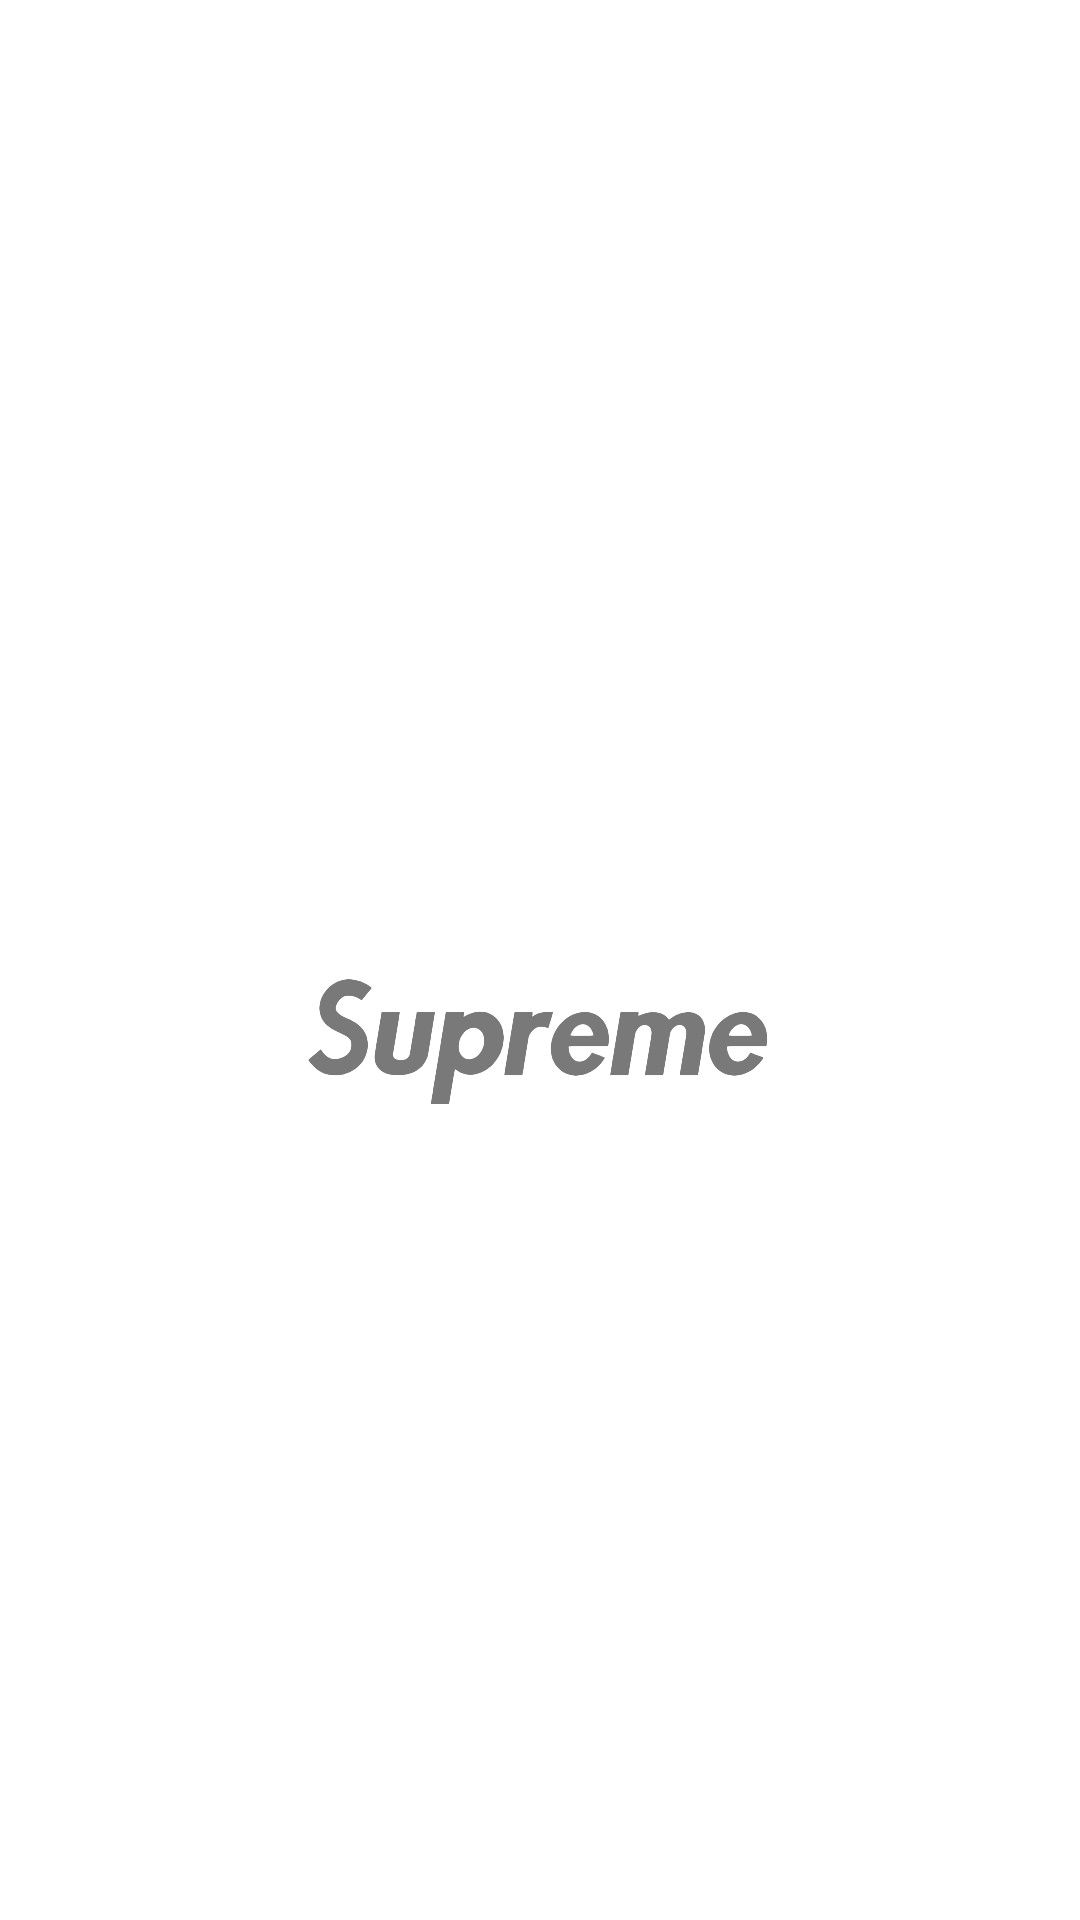 Supreme[10] SUPREME in 2019 Supreme iphone